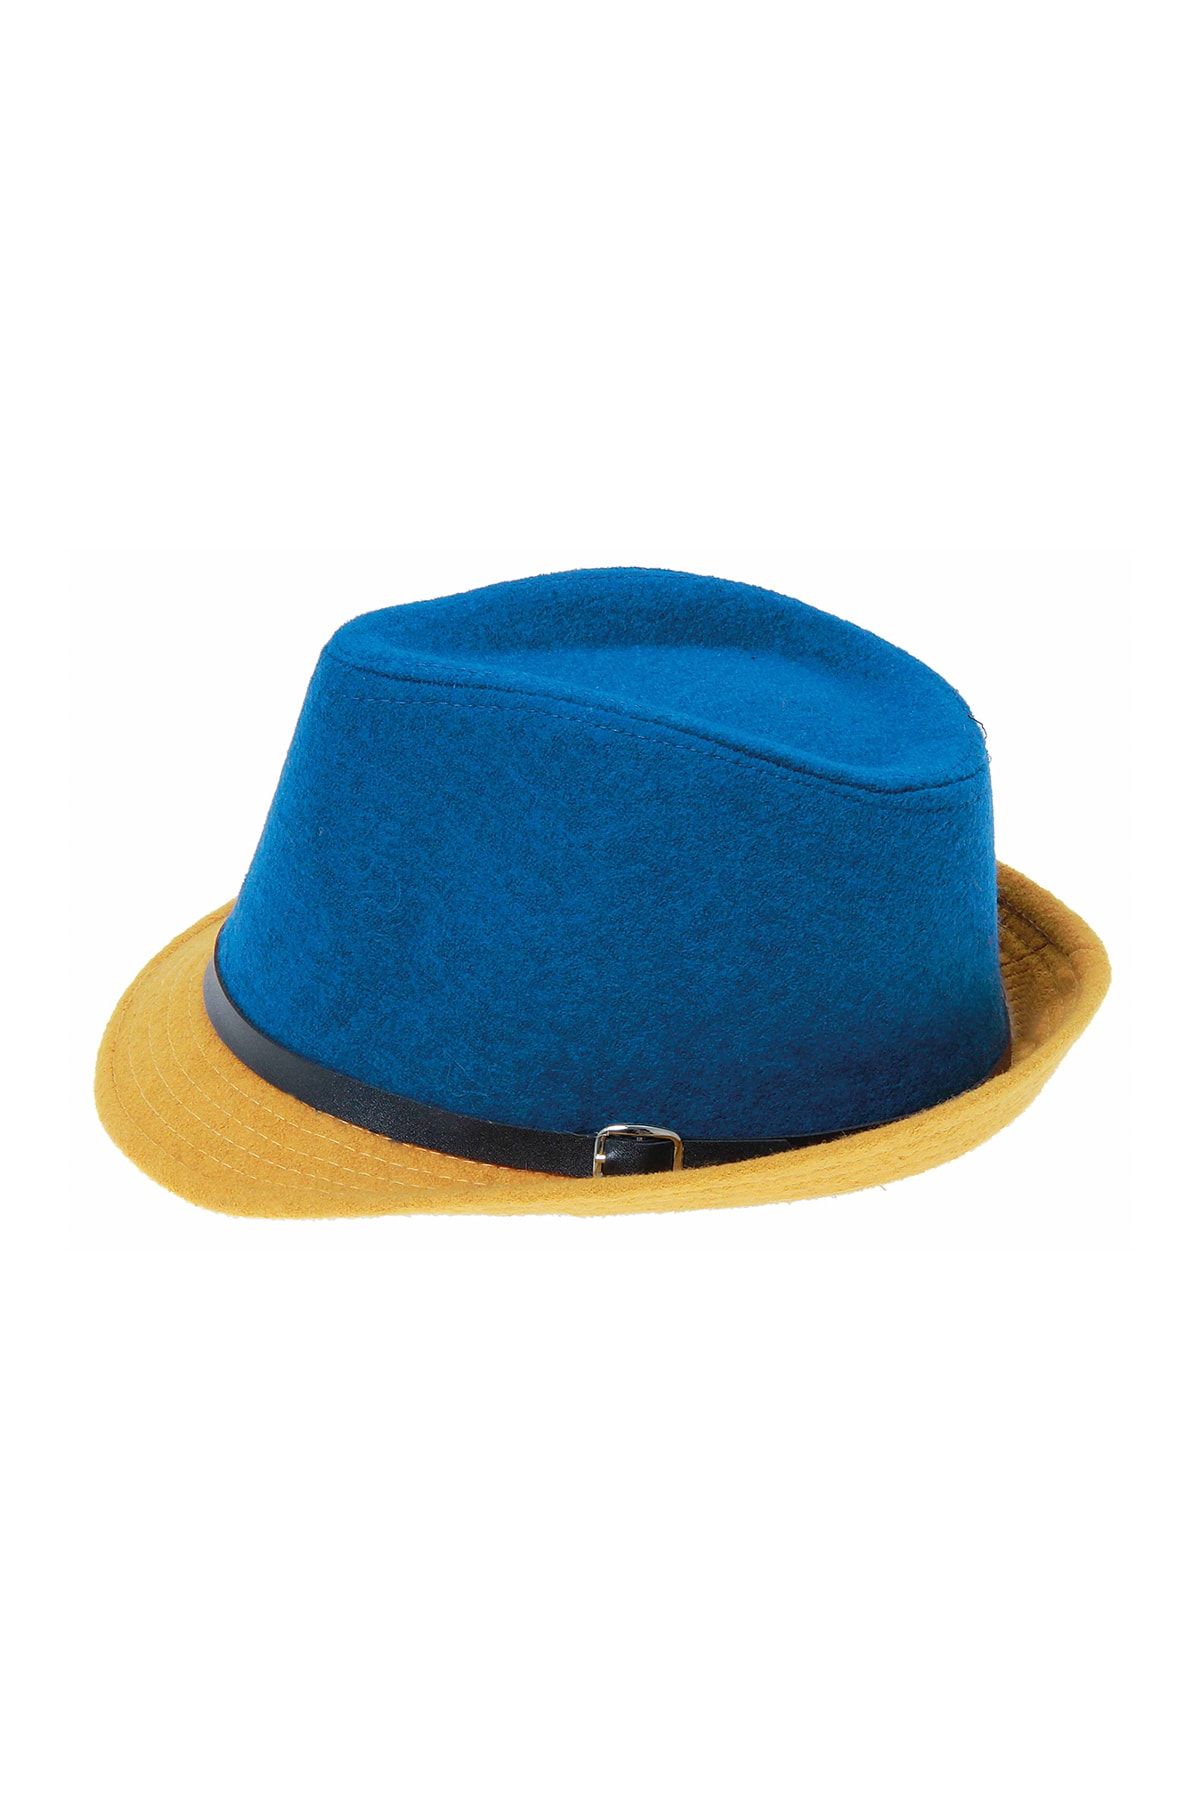 Bay Şapkacı Stok Dışı - Çift Renk Kadın Kaşe Mavi Fötr Şapka 4792